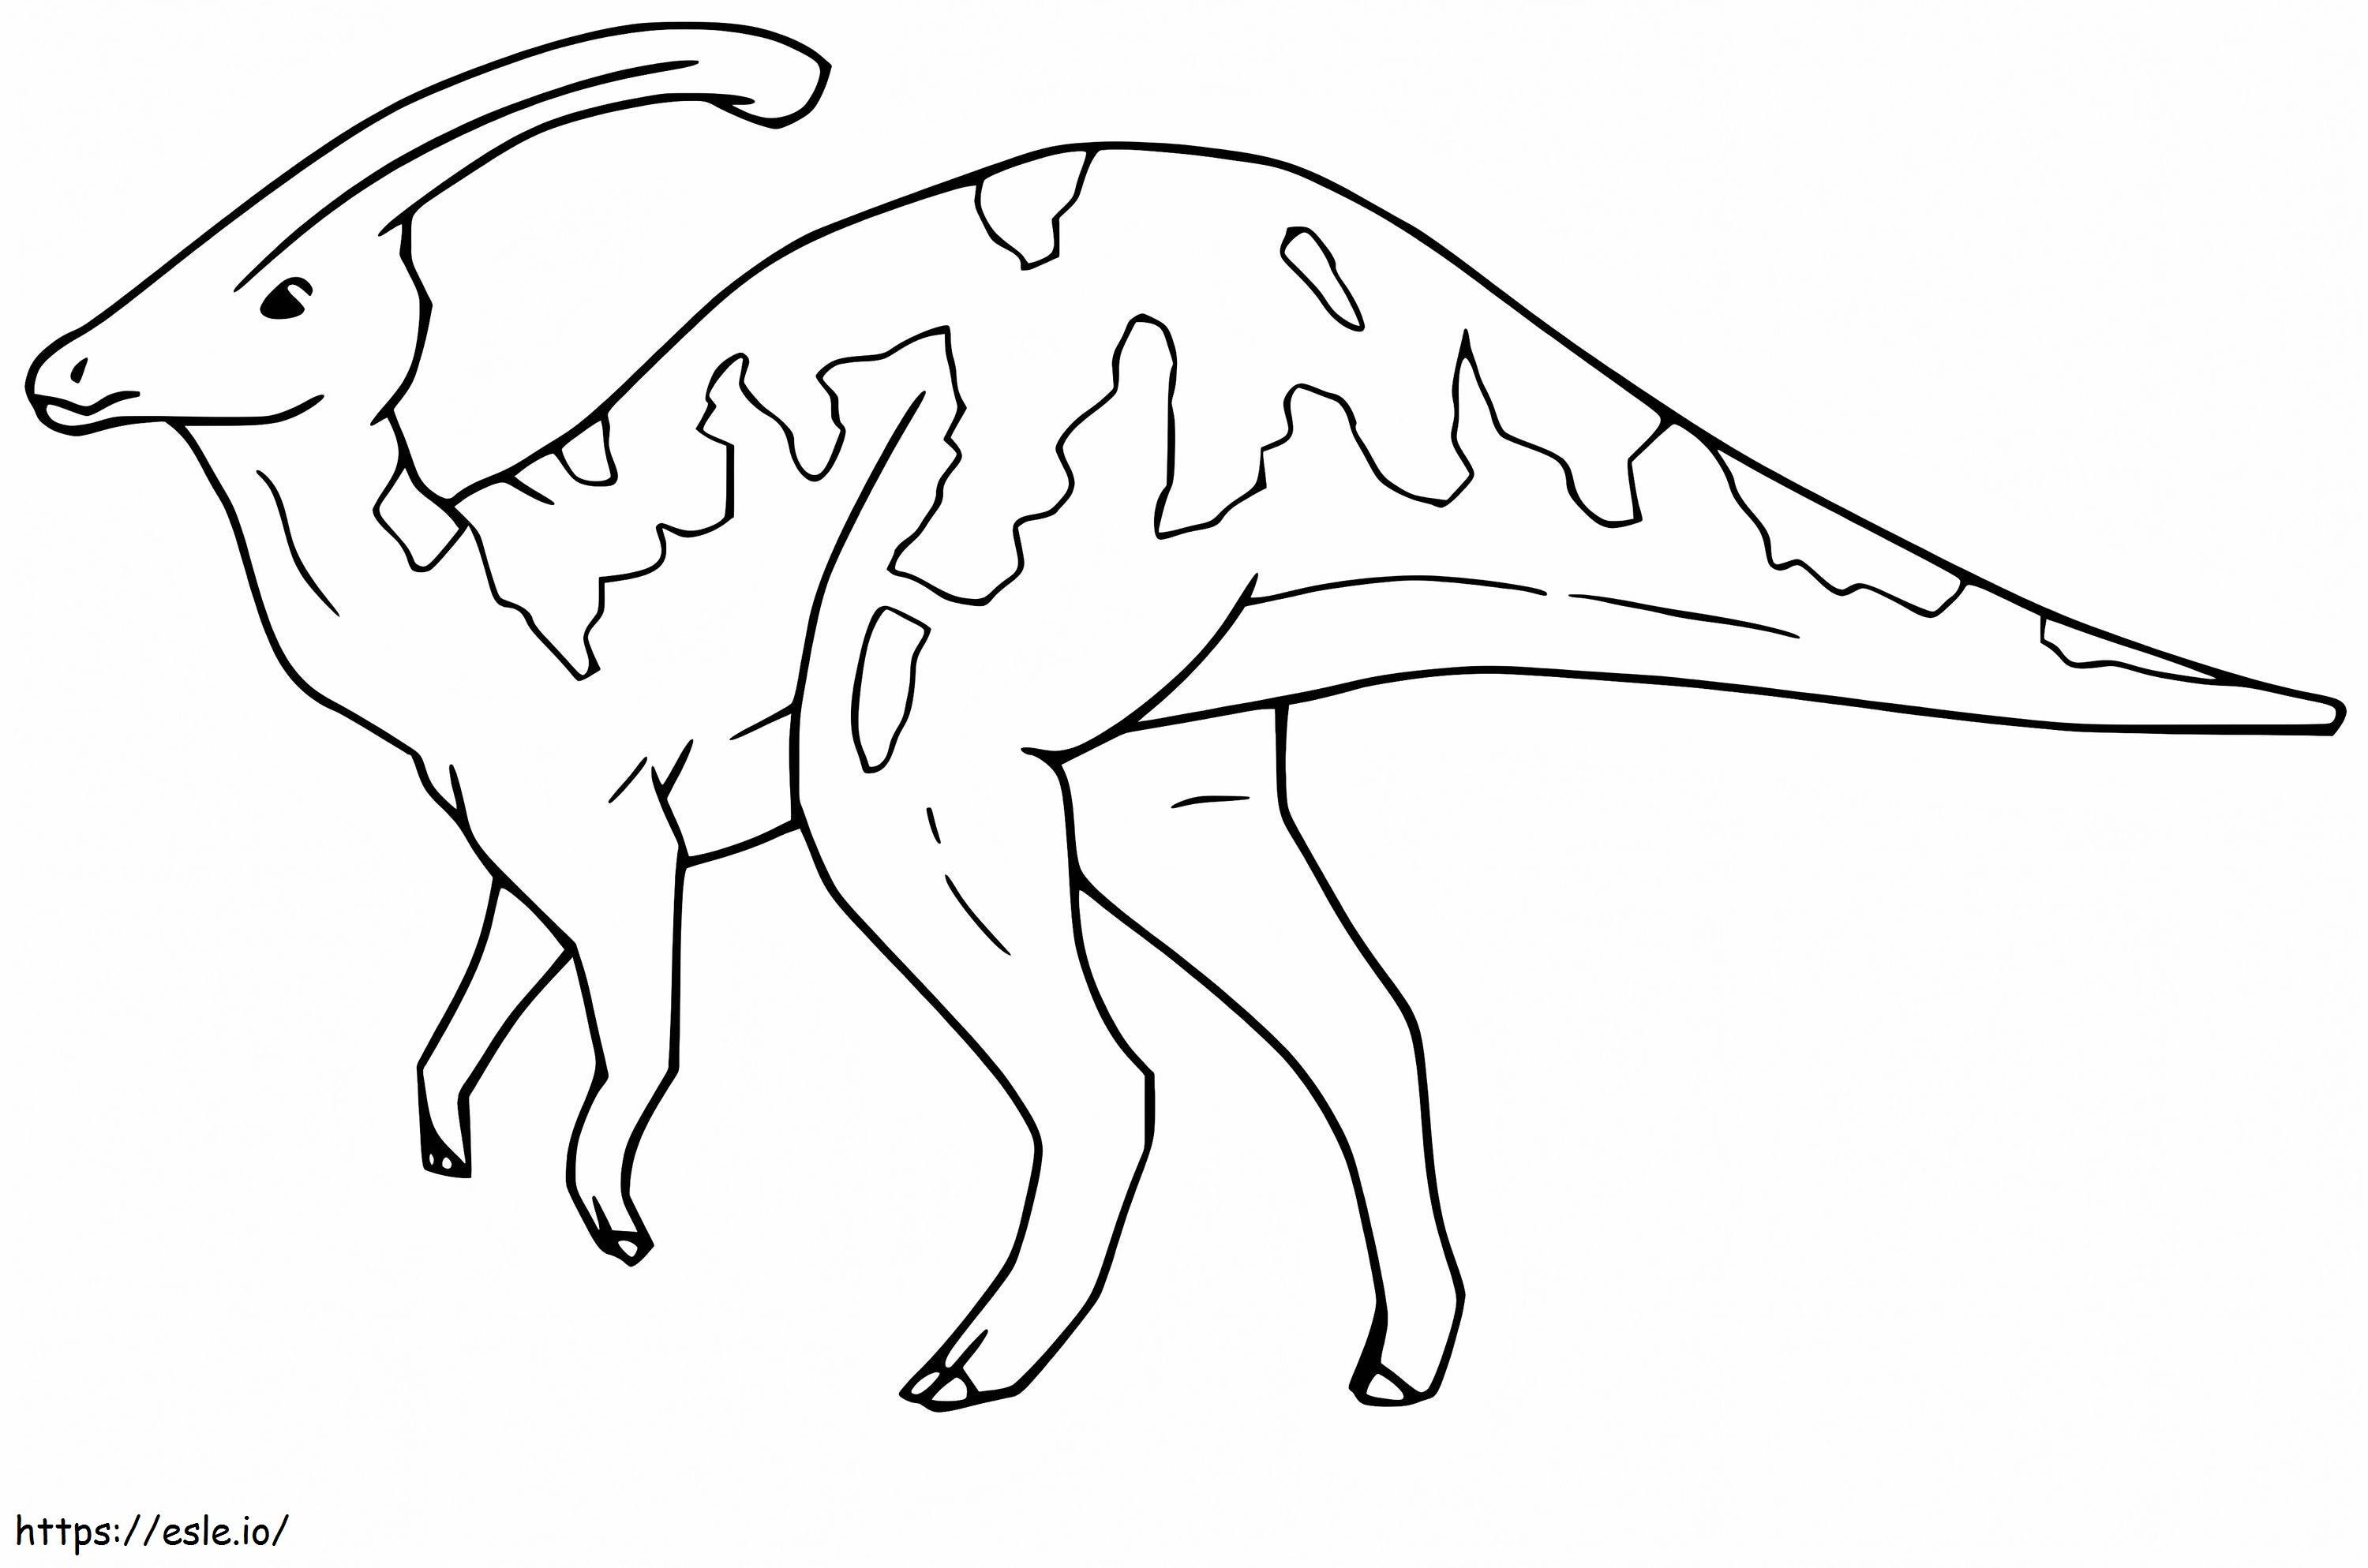 Coloriage Parasaurolophus 3 à imprimer dessin